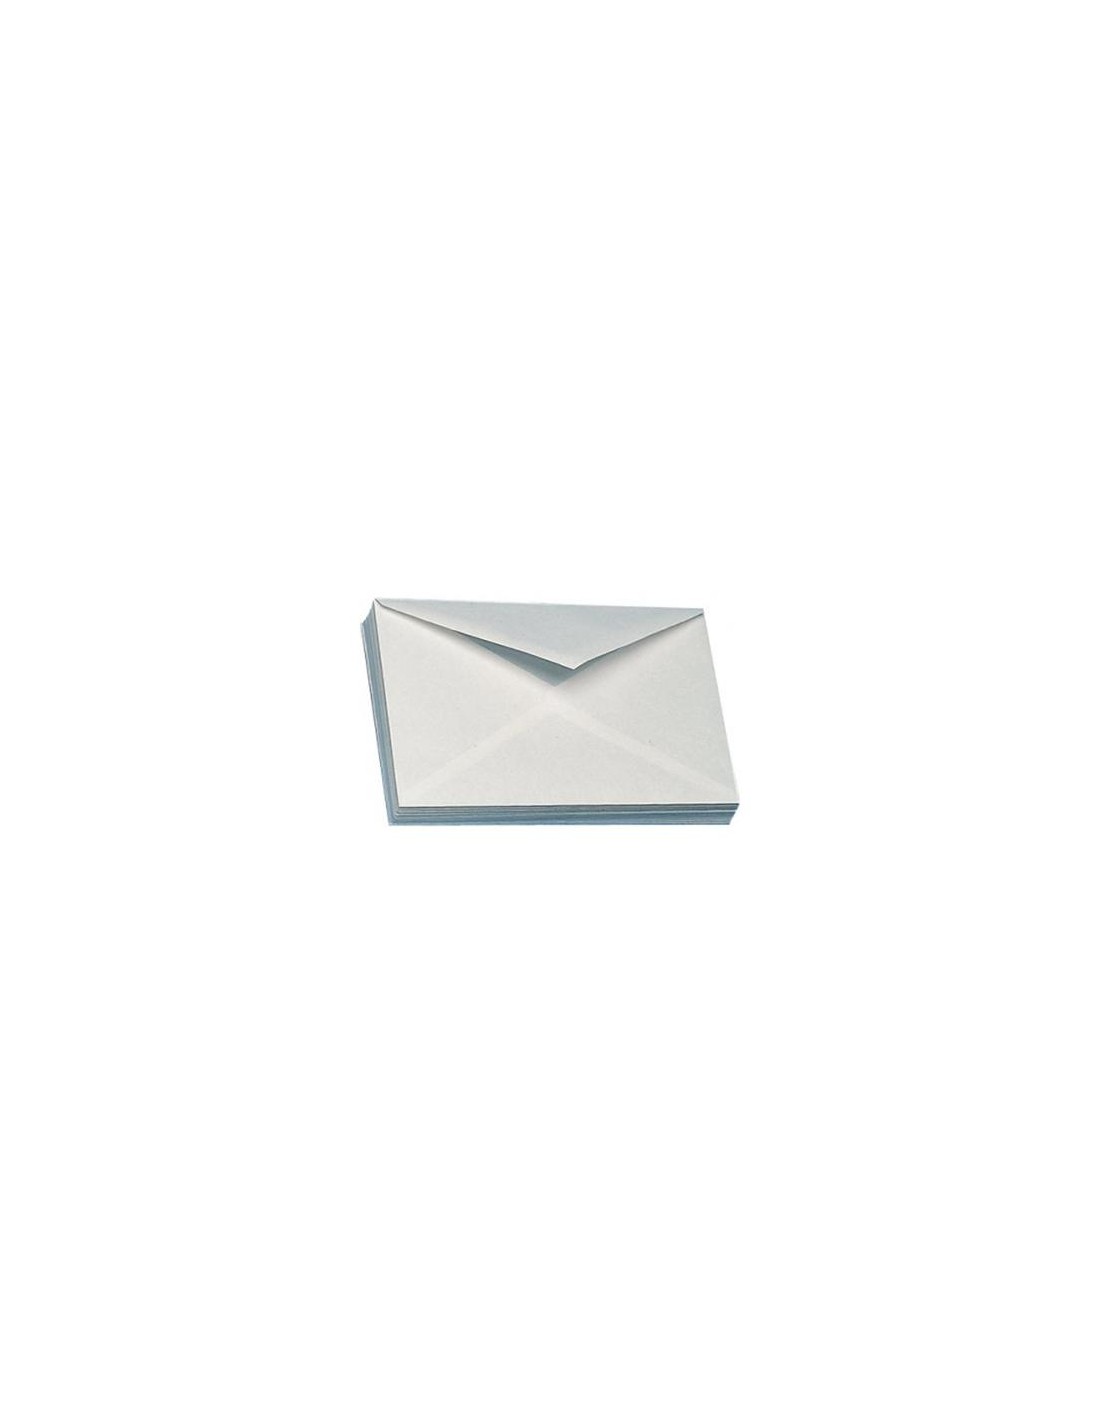 Bianca 500 busta bianca da lettera buste bianche per lettere posta postali 12x18 cm 